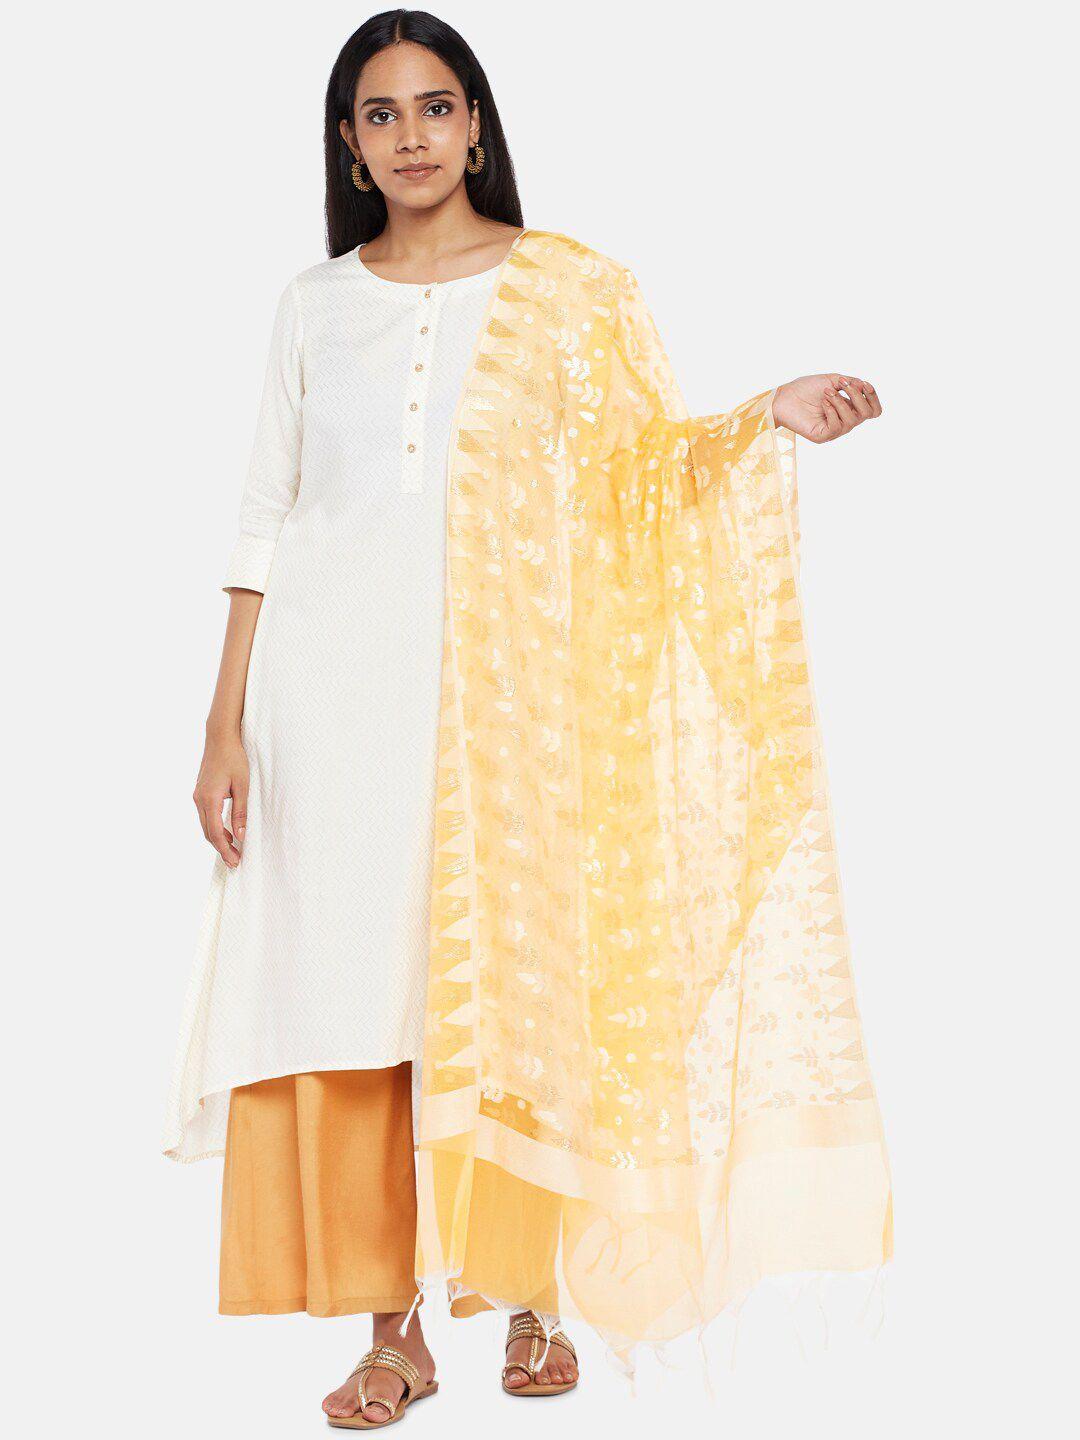 rangmanch by pantaloons women yellow & white woven design pure silk dupatta